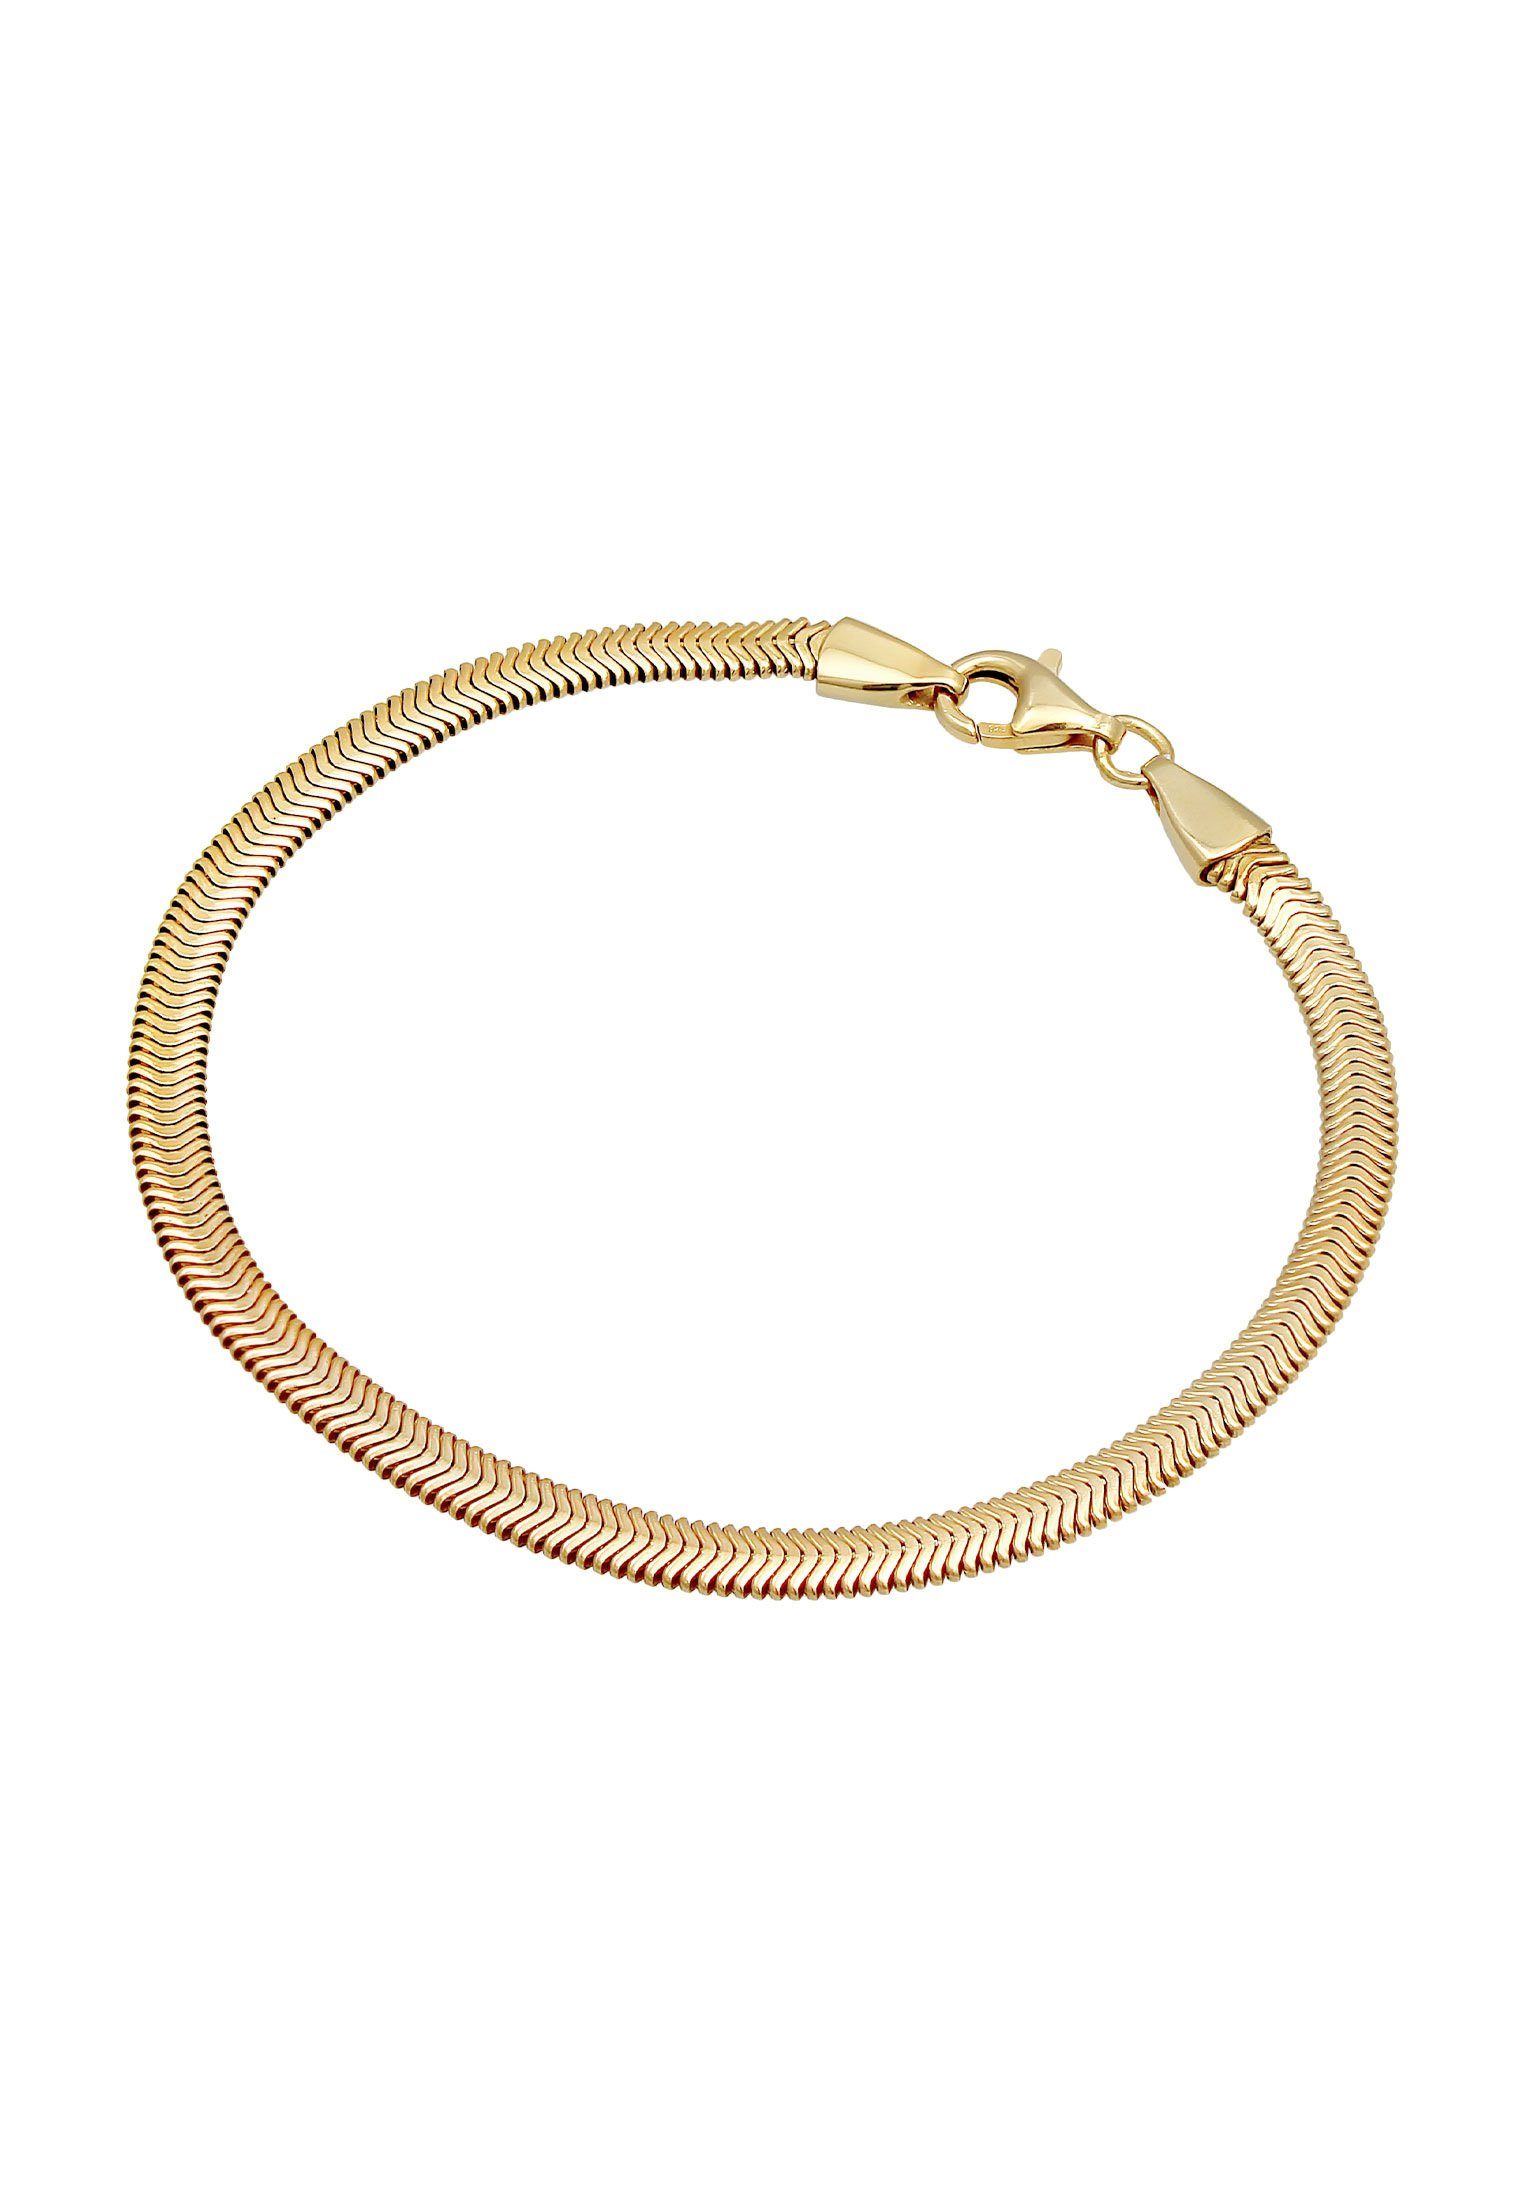 Kuzzoi Silber Fischgräte 925 Flach Armband Schlangenkette Gold Elegant